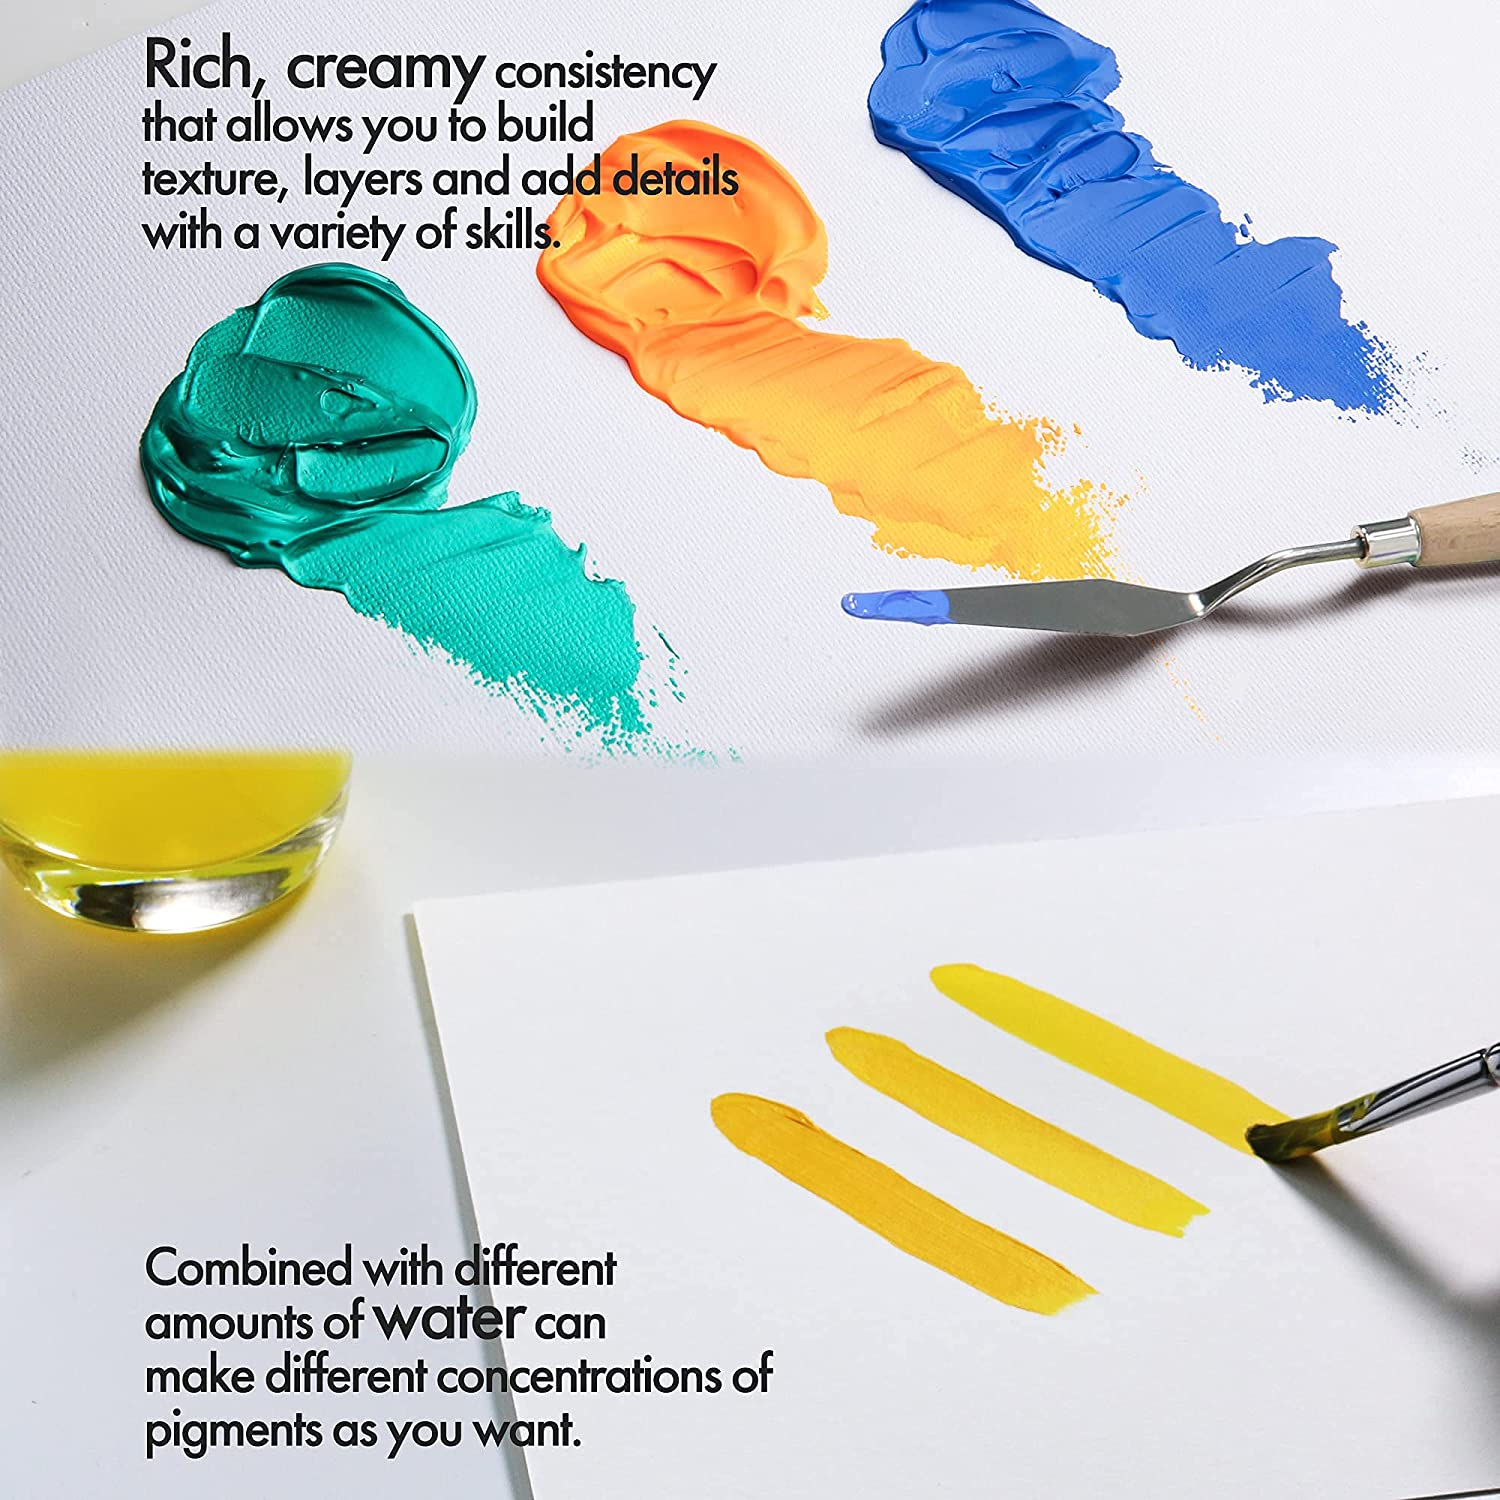 ARTIFY Premium Heavy Body Acrylic Paint Set — 48 Colors (1.29 oz